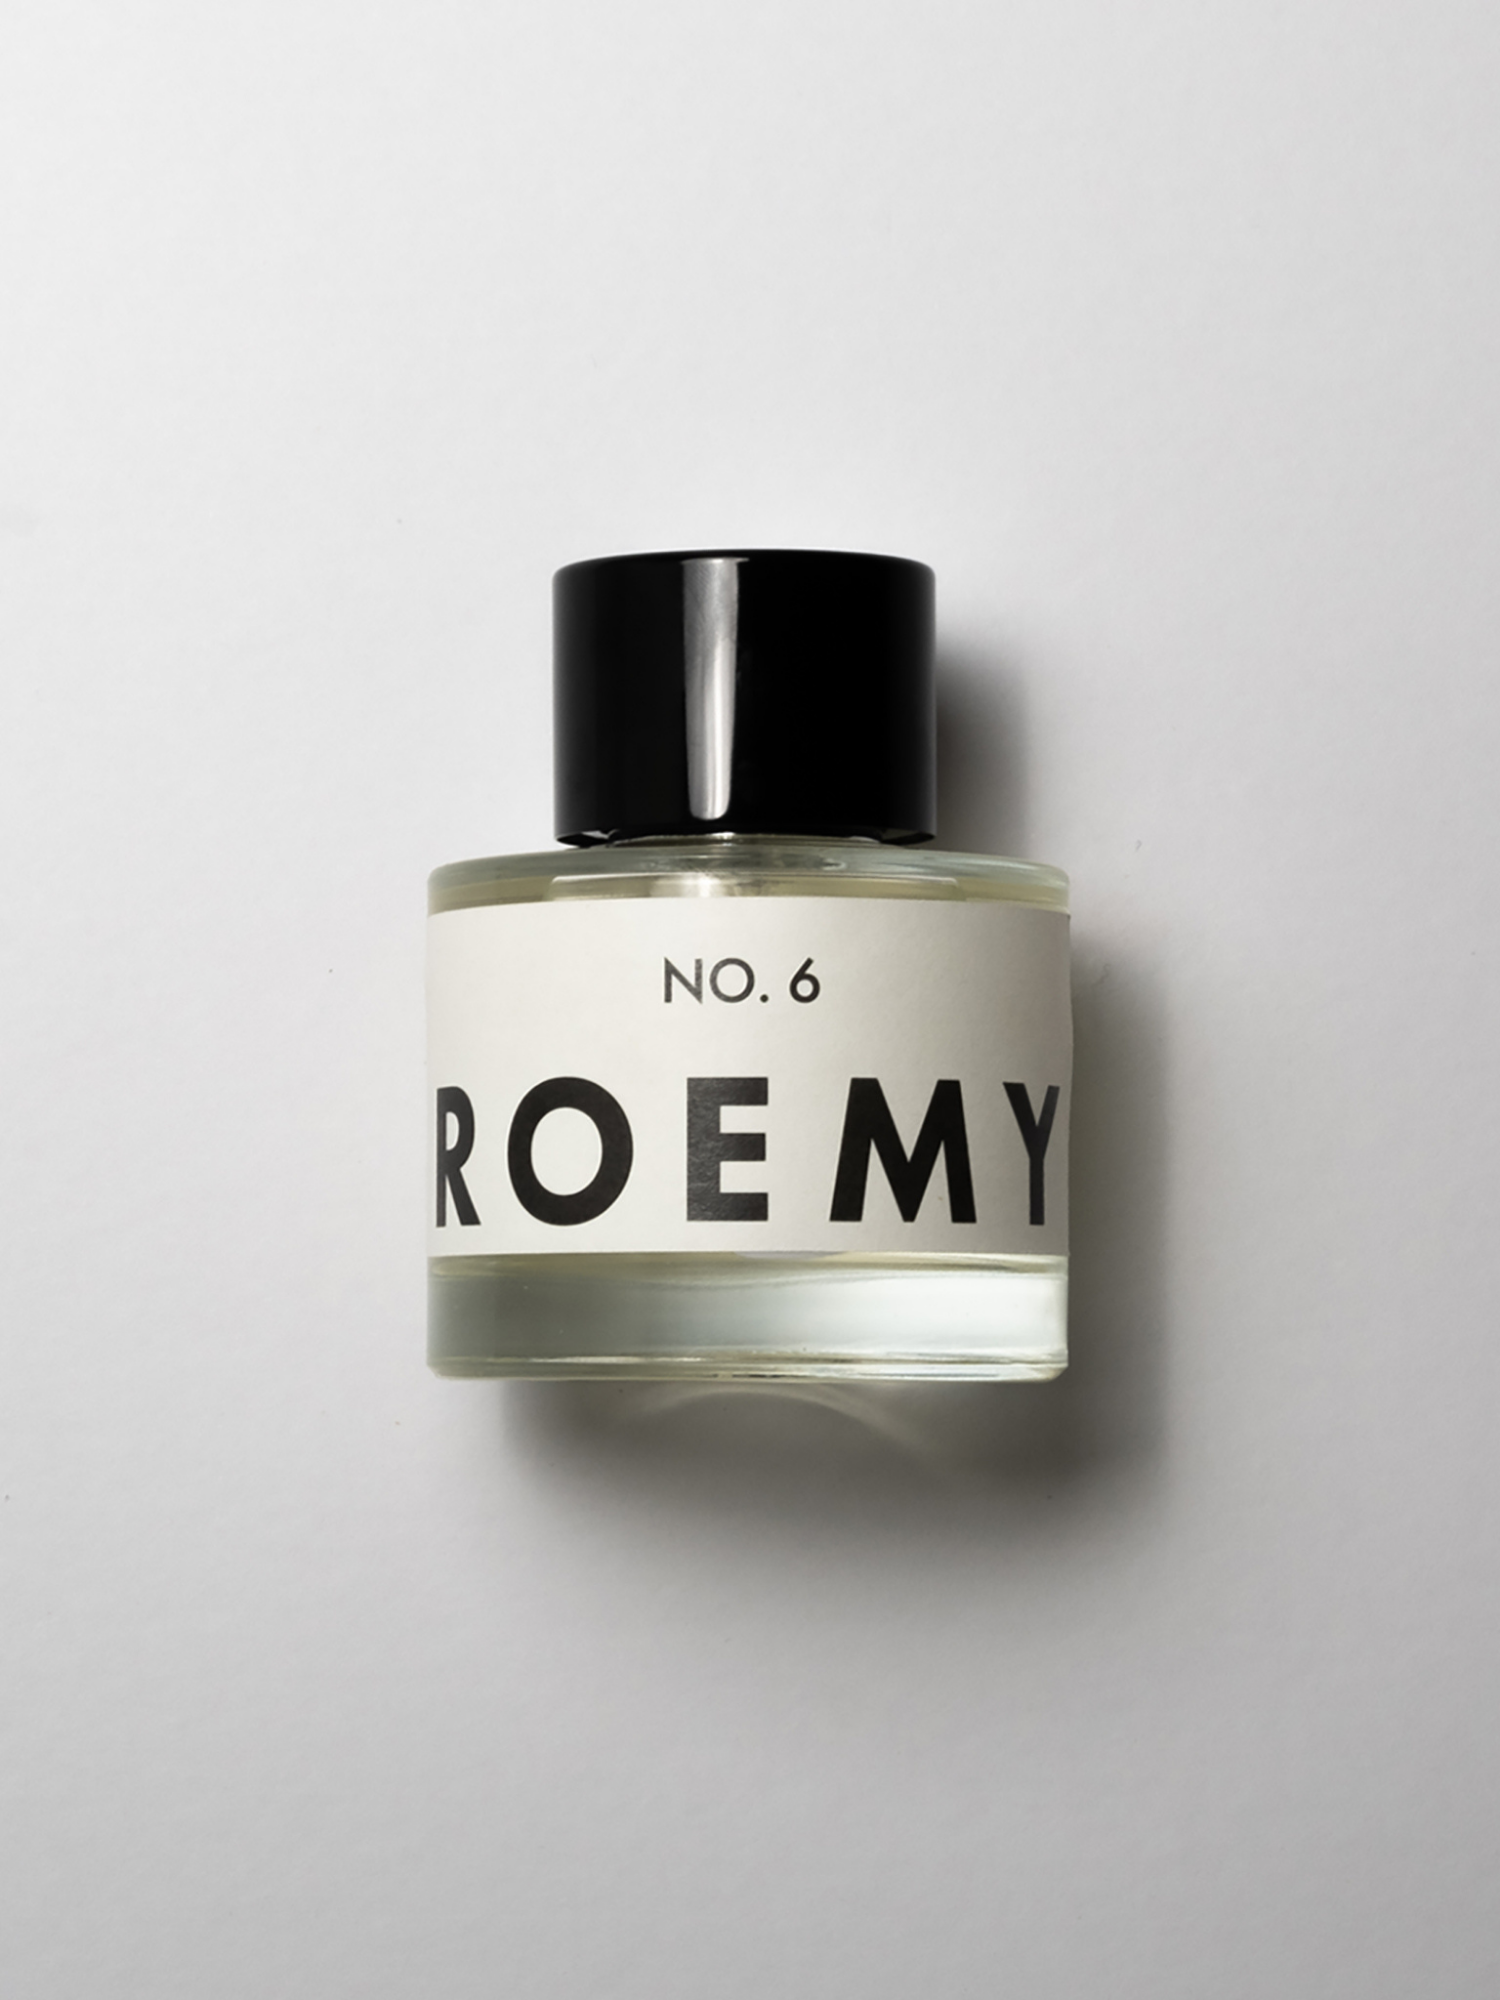 ROEMY - No. 6